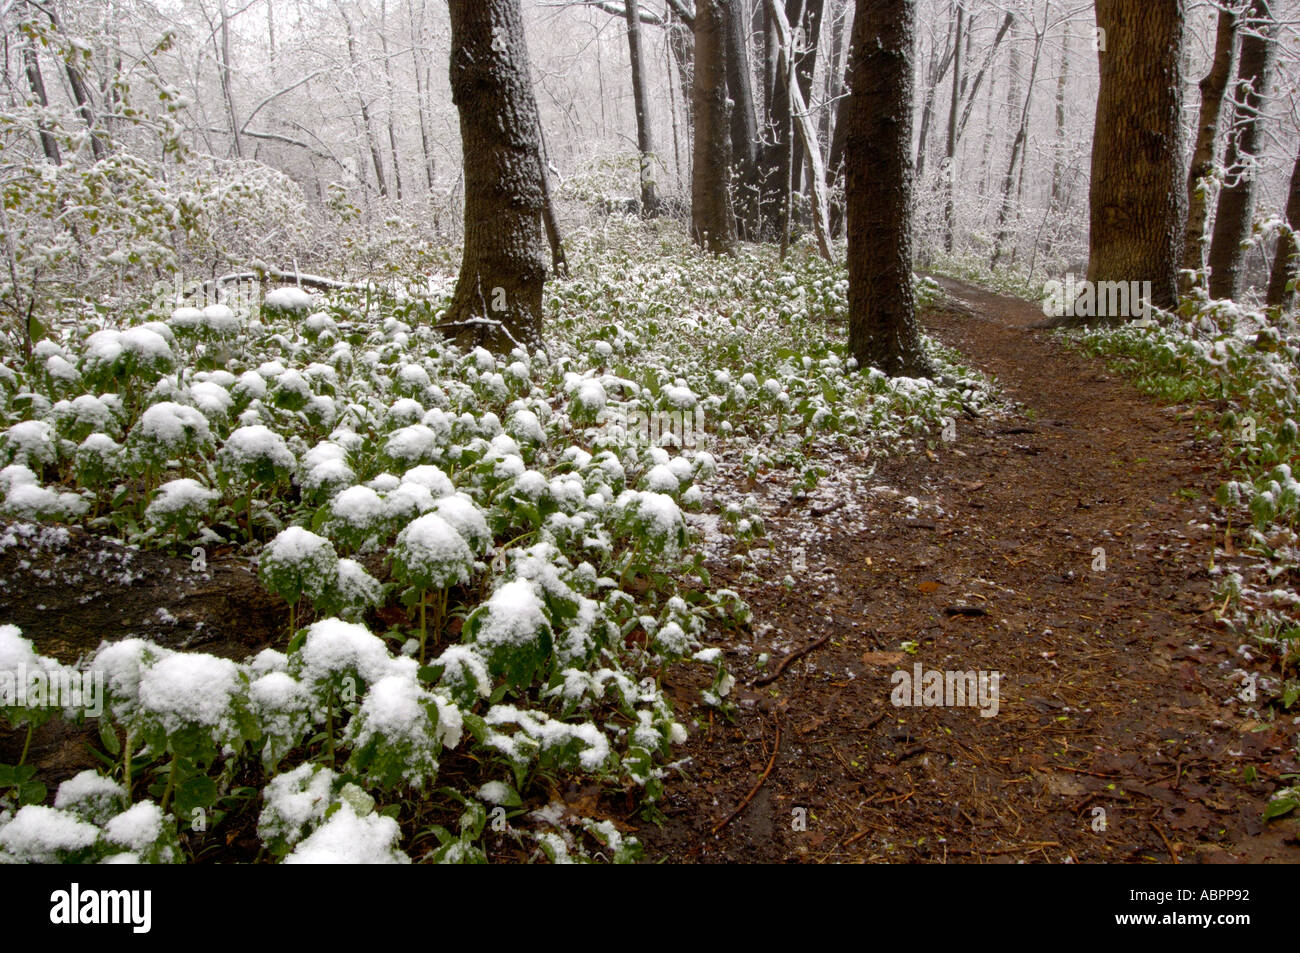 Ein unerwarteter Schneesturm im Wald von Michigan, der Mayple bedeckt, zeigt extremes Wetter aufgrund des Klimawandels wahrscheinlicher. Stockfoto